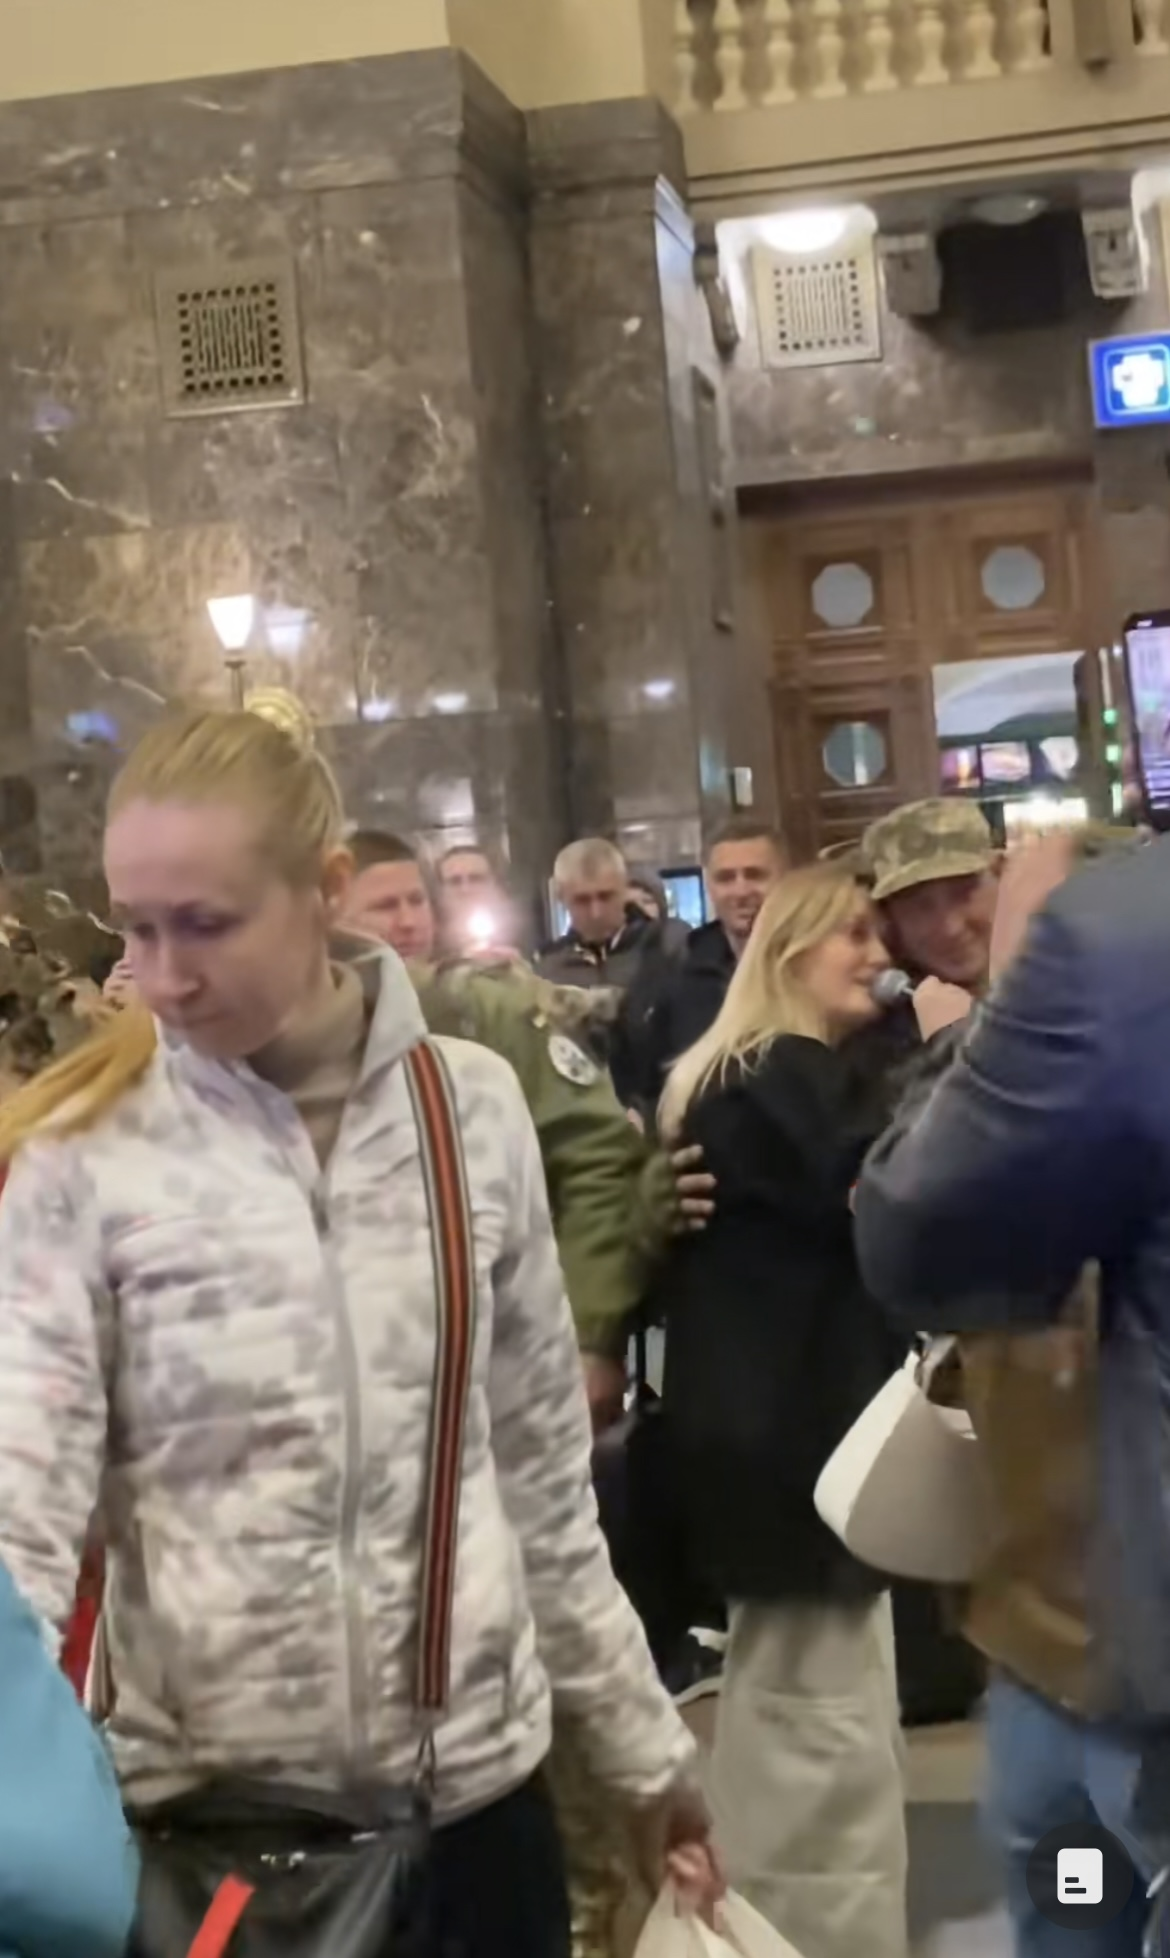 KOLA расплакалась во время выступления на вокзале, увидев военных: видео растрогало сеть